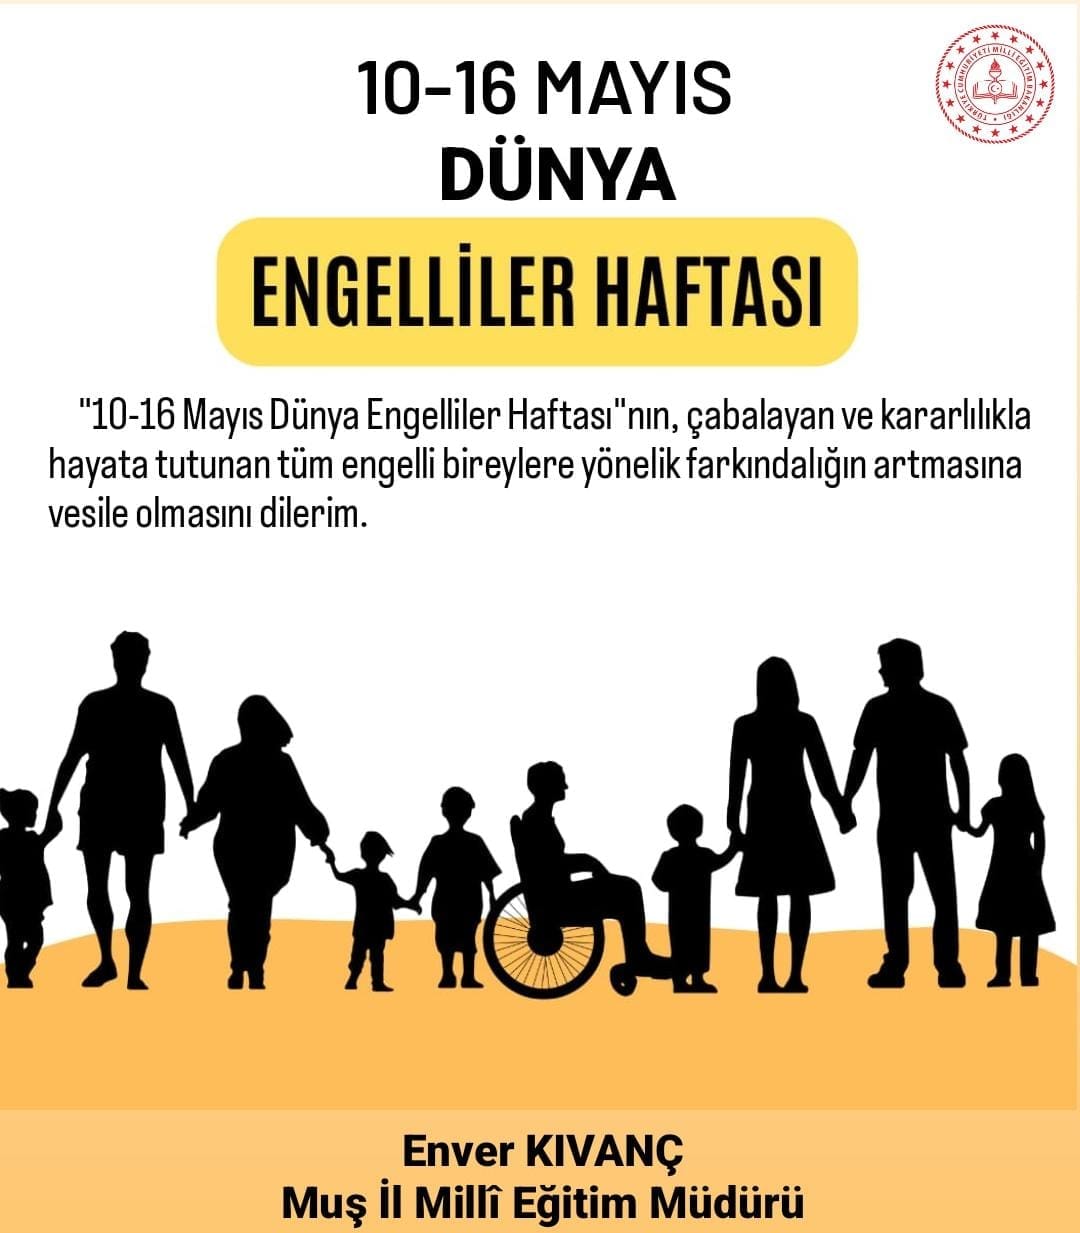 Millî Eğitim Müdürü Enver Kıvanç'dan Engelliler Haftası Mesajı